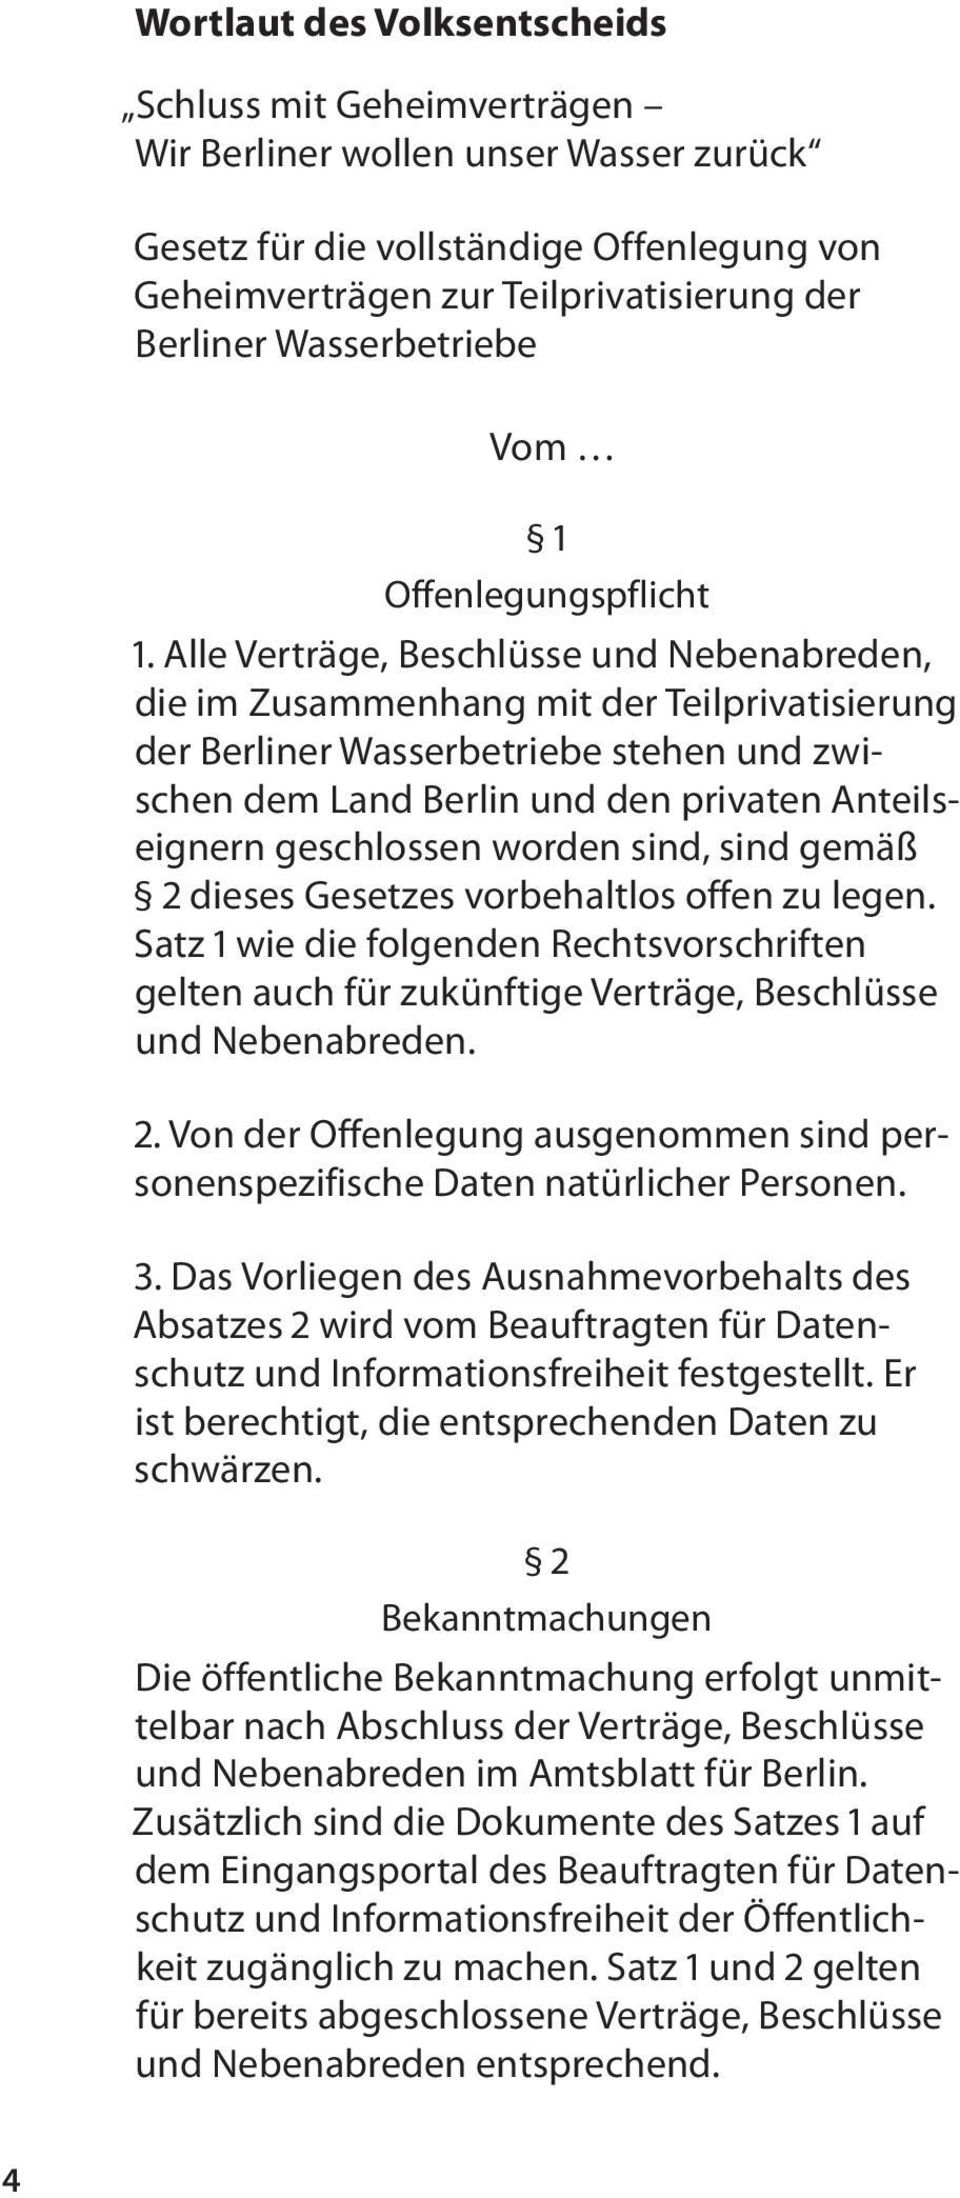 Alle Verträge, Beschlüsse und Nebenabreden, die im Zusammenhang mit der Teilprivatisierung der Berliner Wasserbetriebe stehen und zwischen dem Land Berlin und den privaten Anteilseignern geschlossen